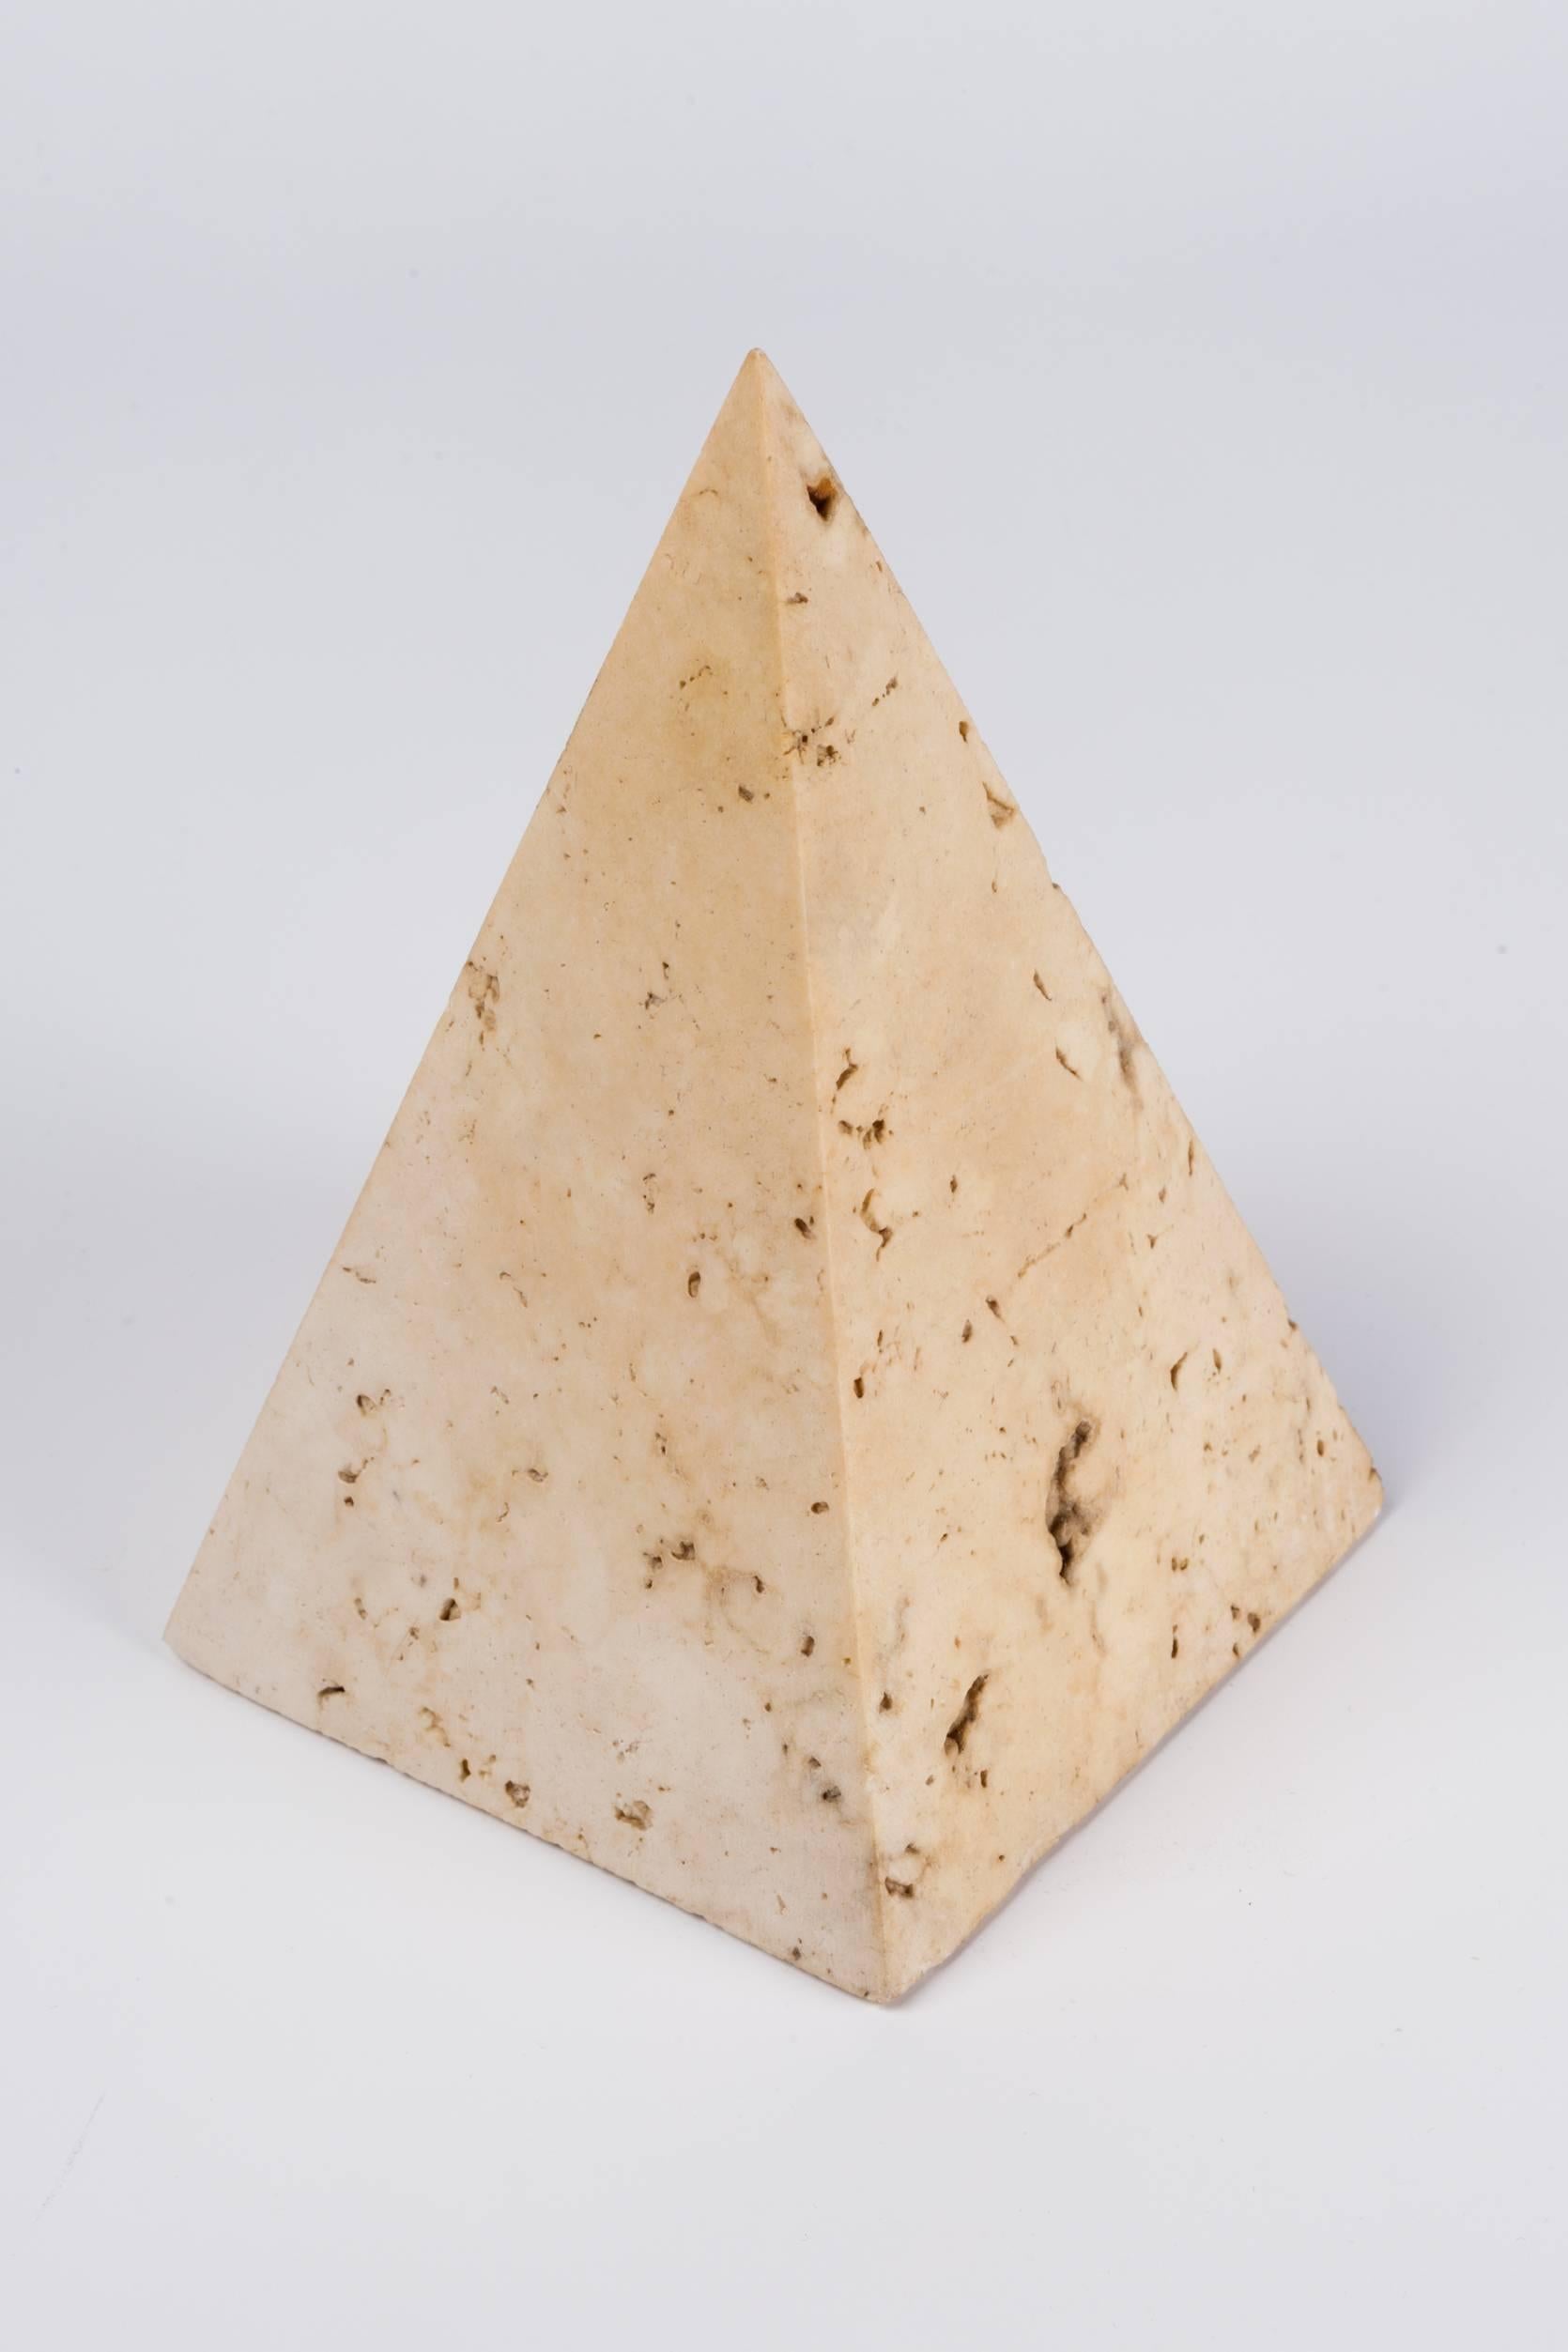 Post-Modern Italian Travertine Stone Pyramid Paperweight, 1970s